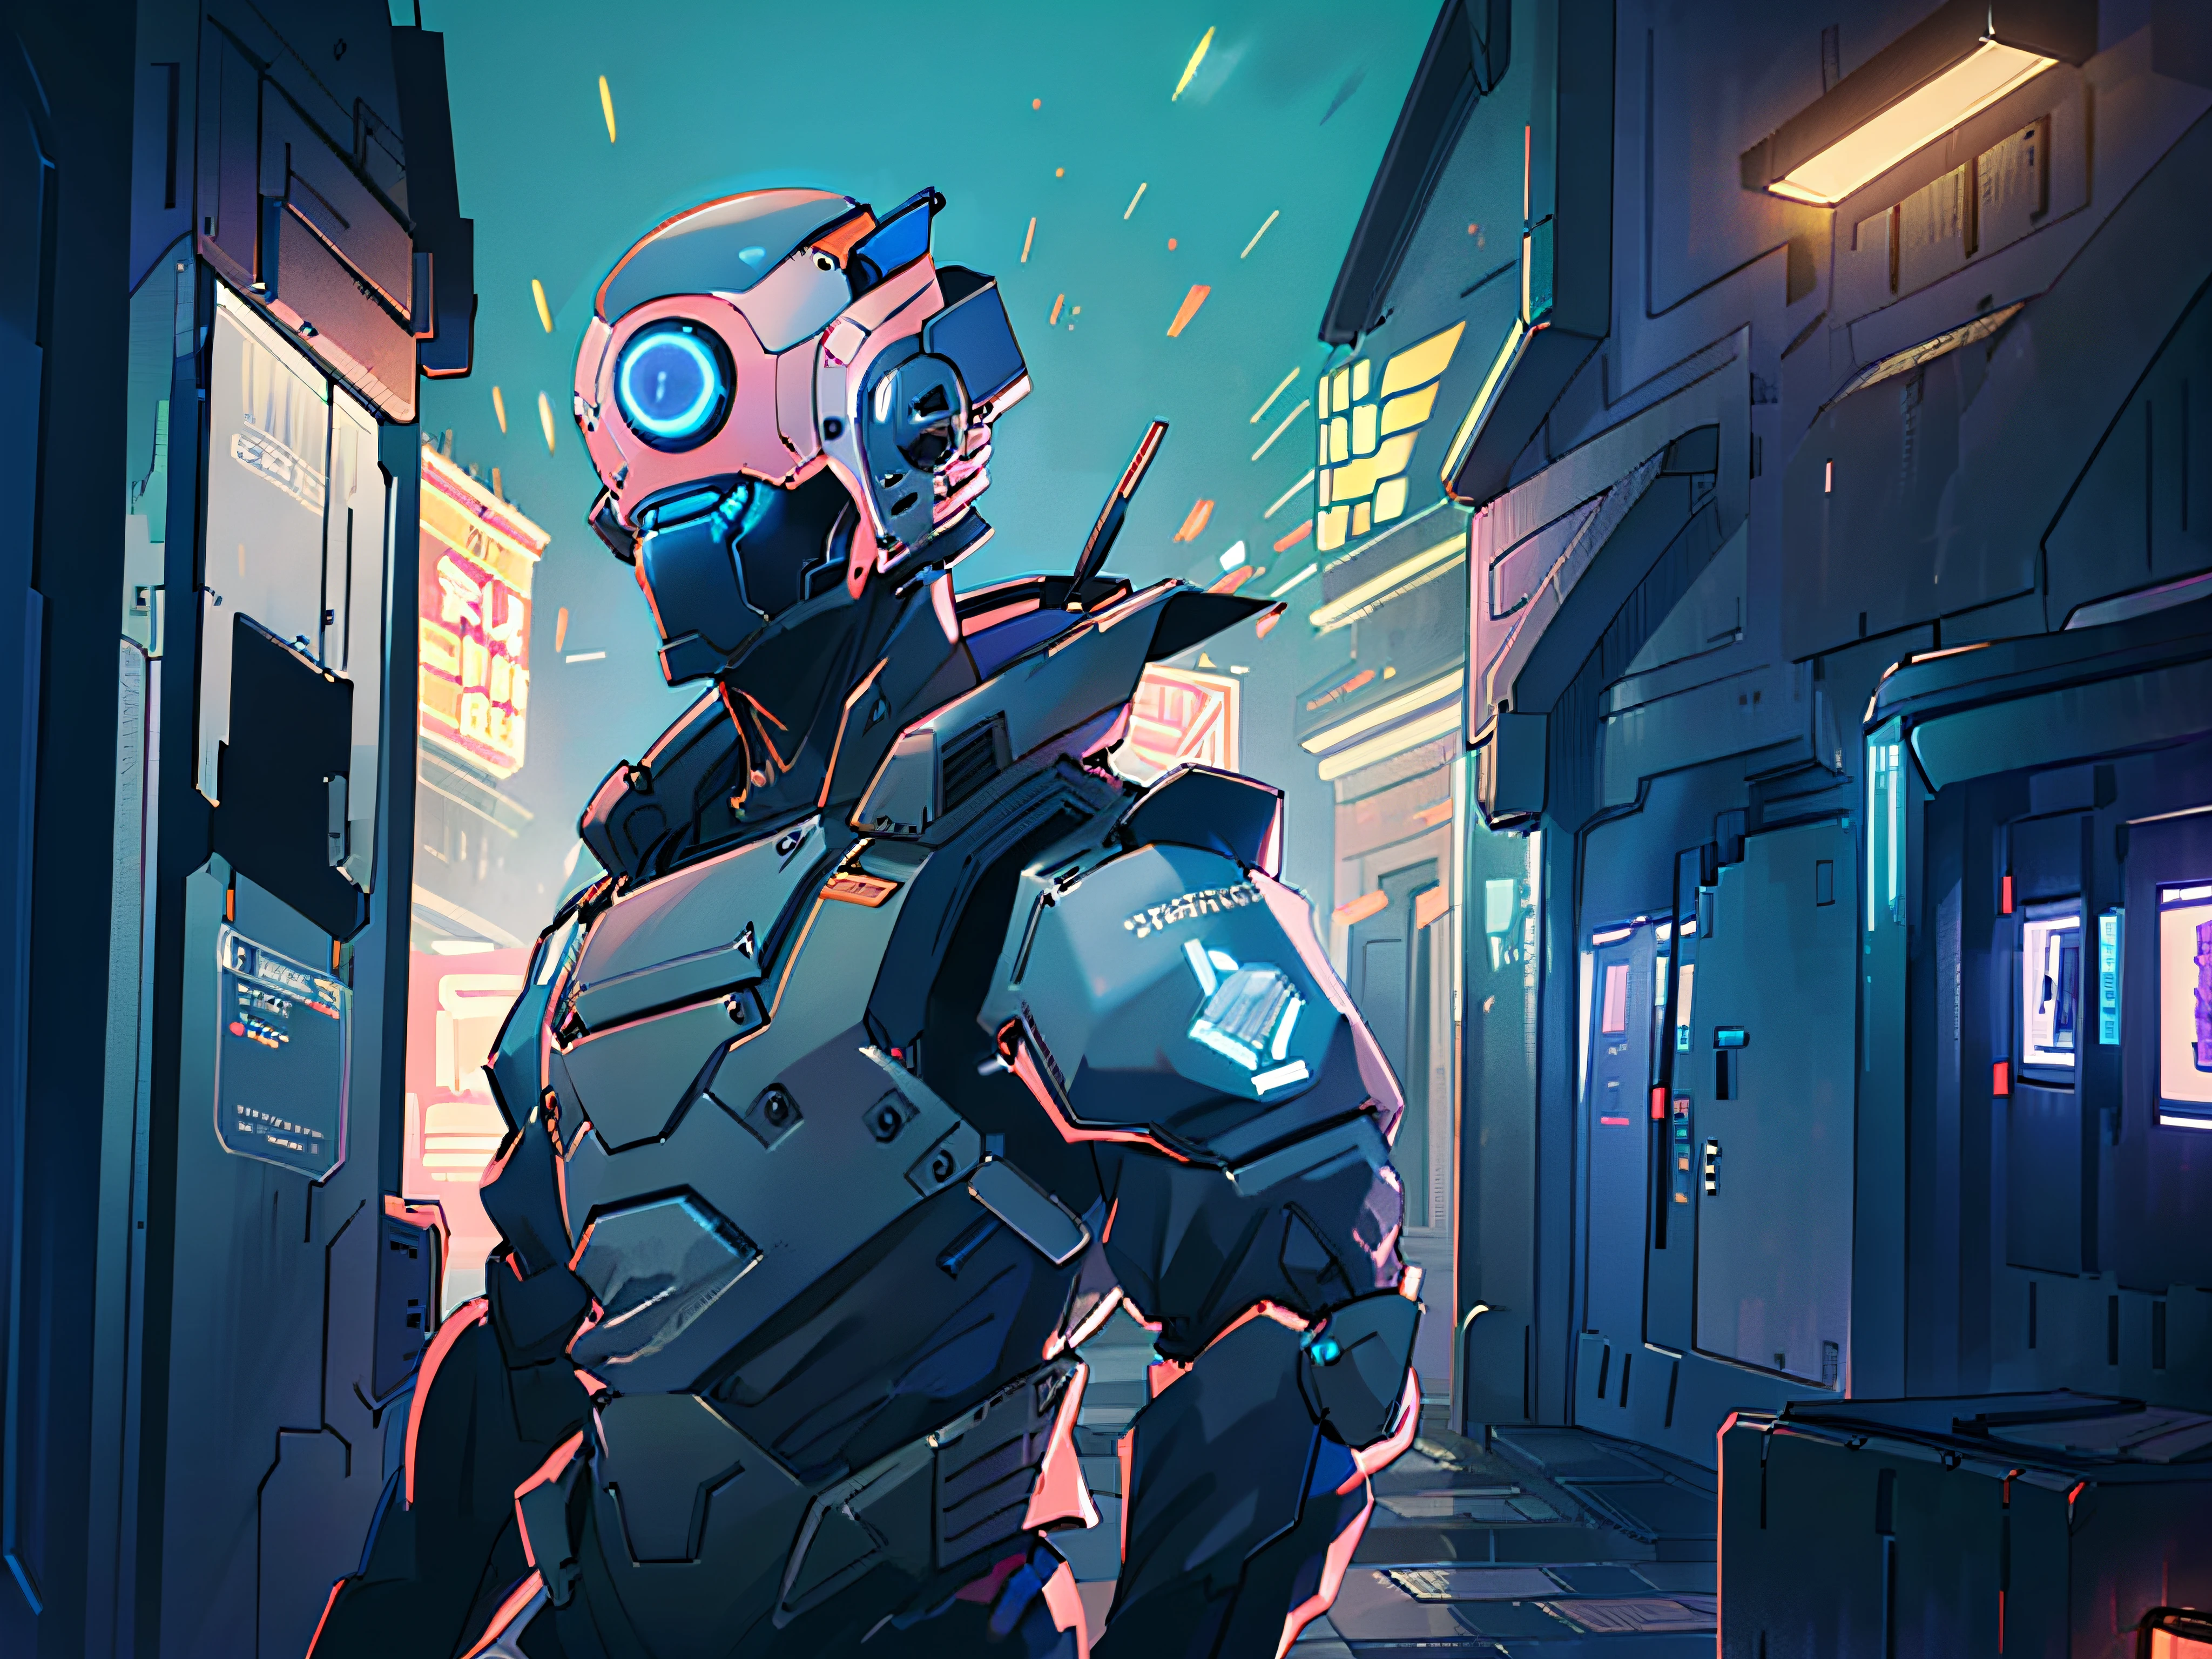 (Лучшее качество:0.8), (Лучшее качество:0.8), идеальная аниме-иллюстрация, Экстремальный портрет робота-солдата, идущего по городу, крупным планом